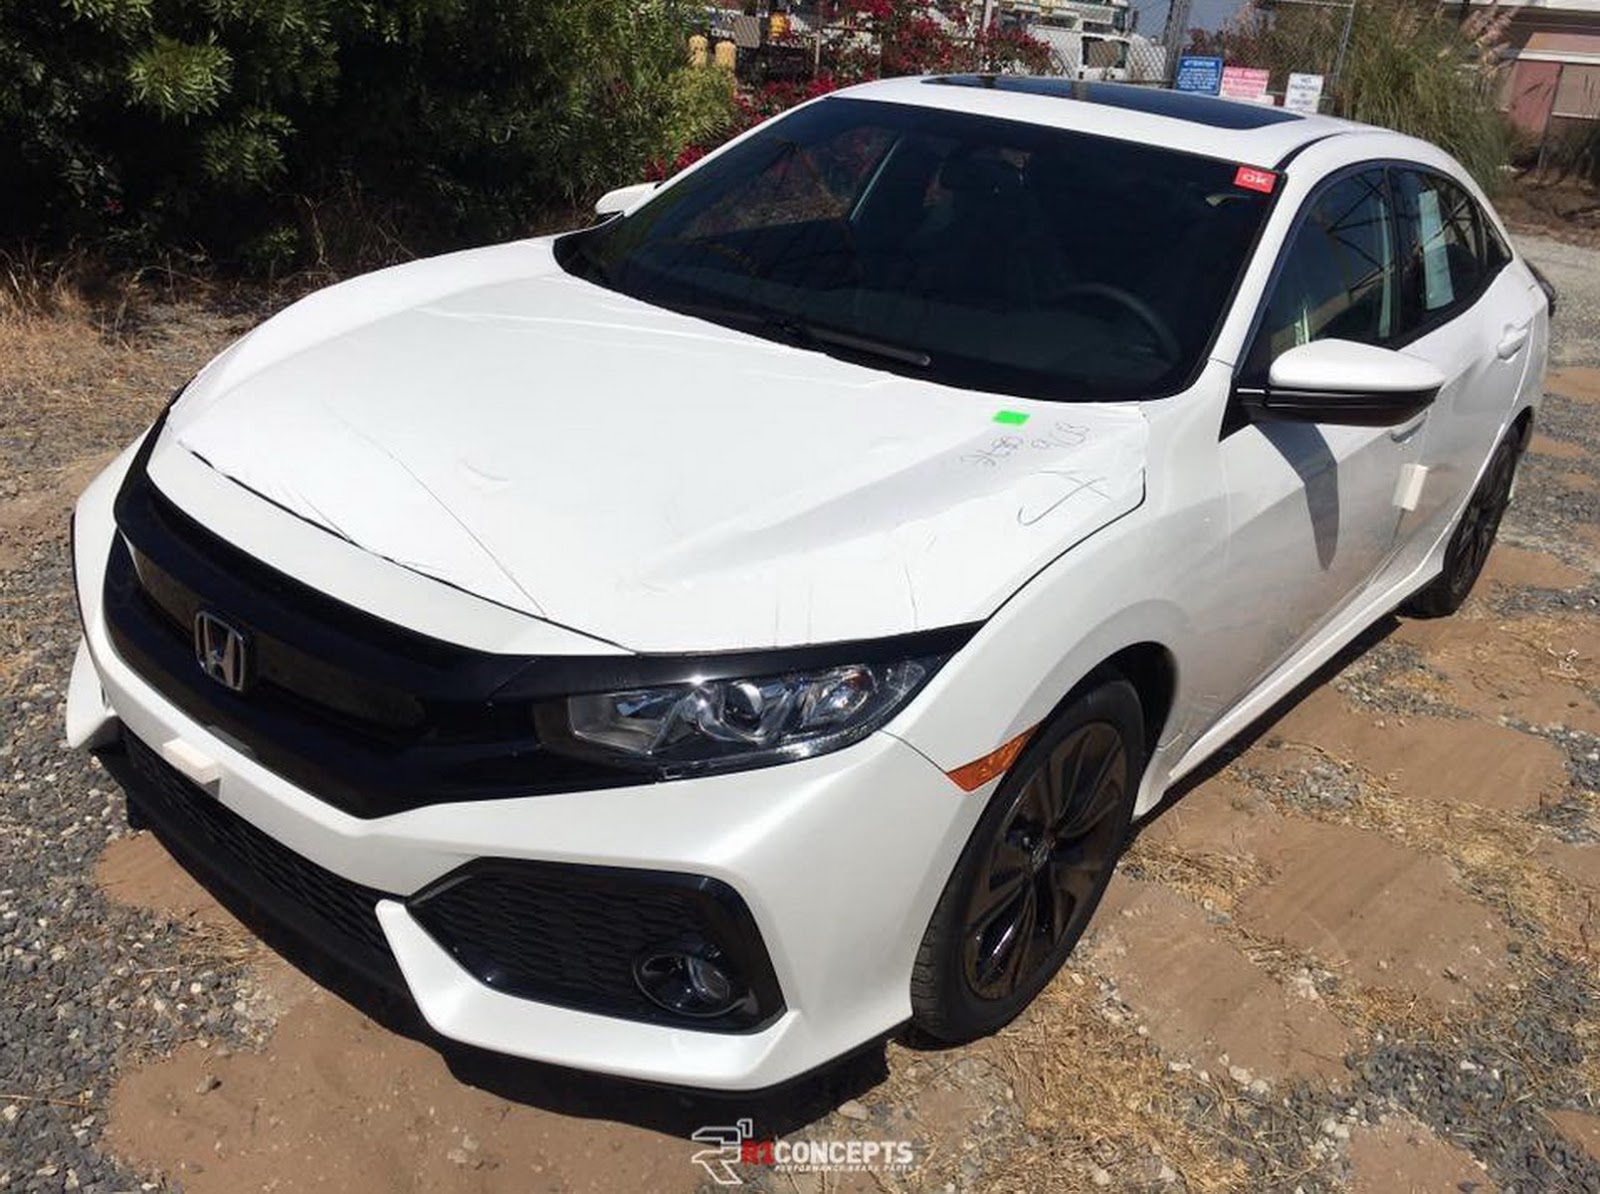 Honda Civic Hatchback 2017 Spek Amerika Terlihat Tanpa Kamuflase